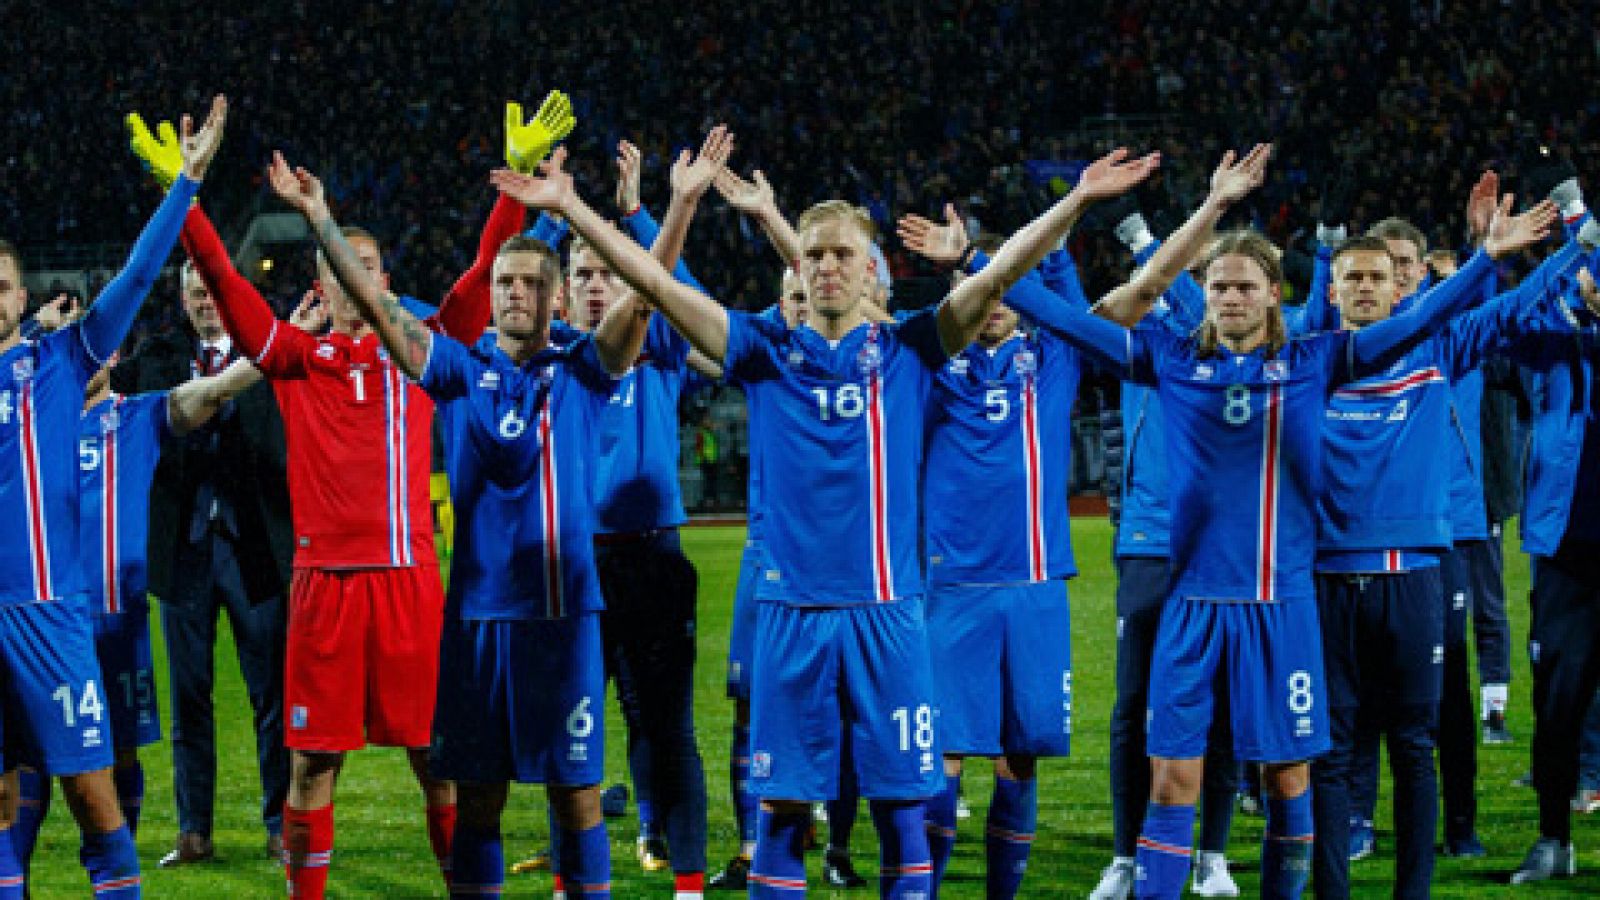 La selección islandesa sigue haciendo historia al haber conseguido la clasificación para su primer Mundial de fútbol. Por otra parte, Croacia celebró un segundo puesto de grupo que le manda a la repesca, su última opción de lograr el pase mundialista